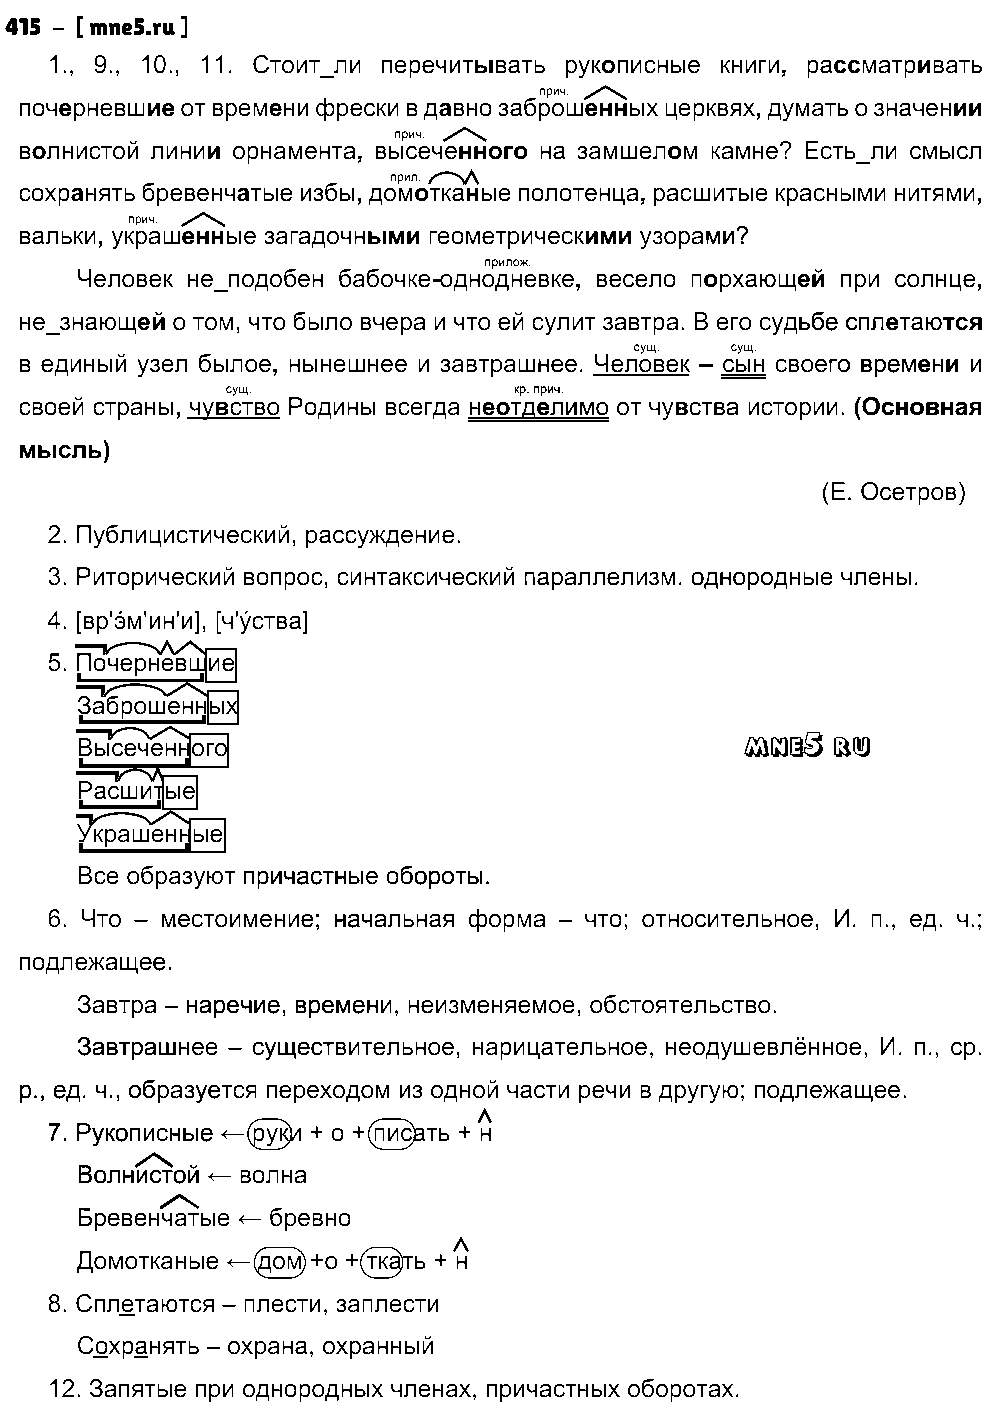 ГДЗ Русский язык 8 класс - 415